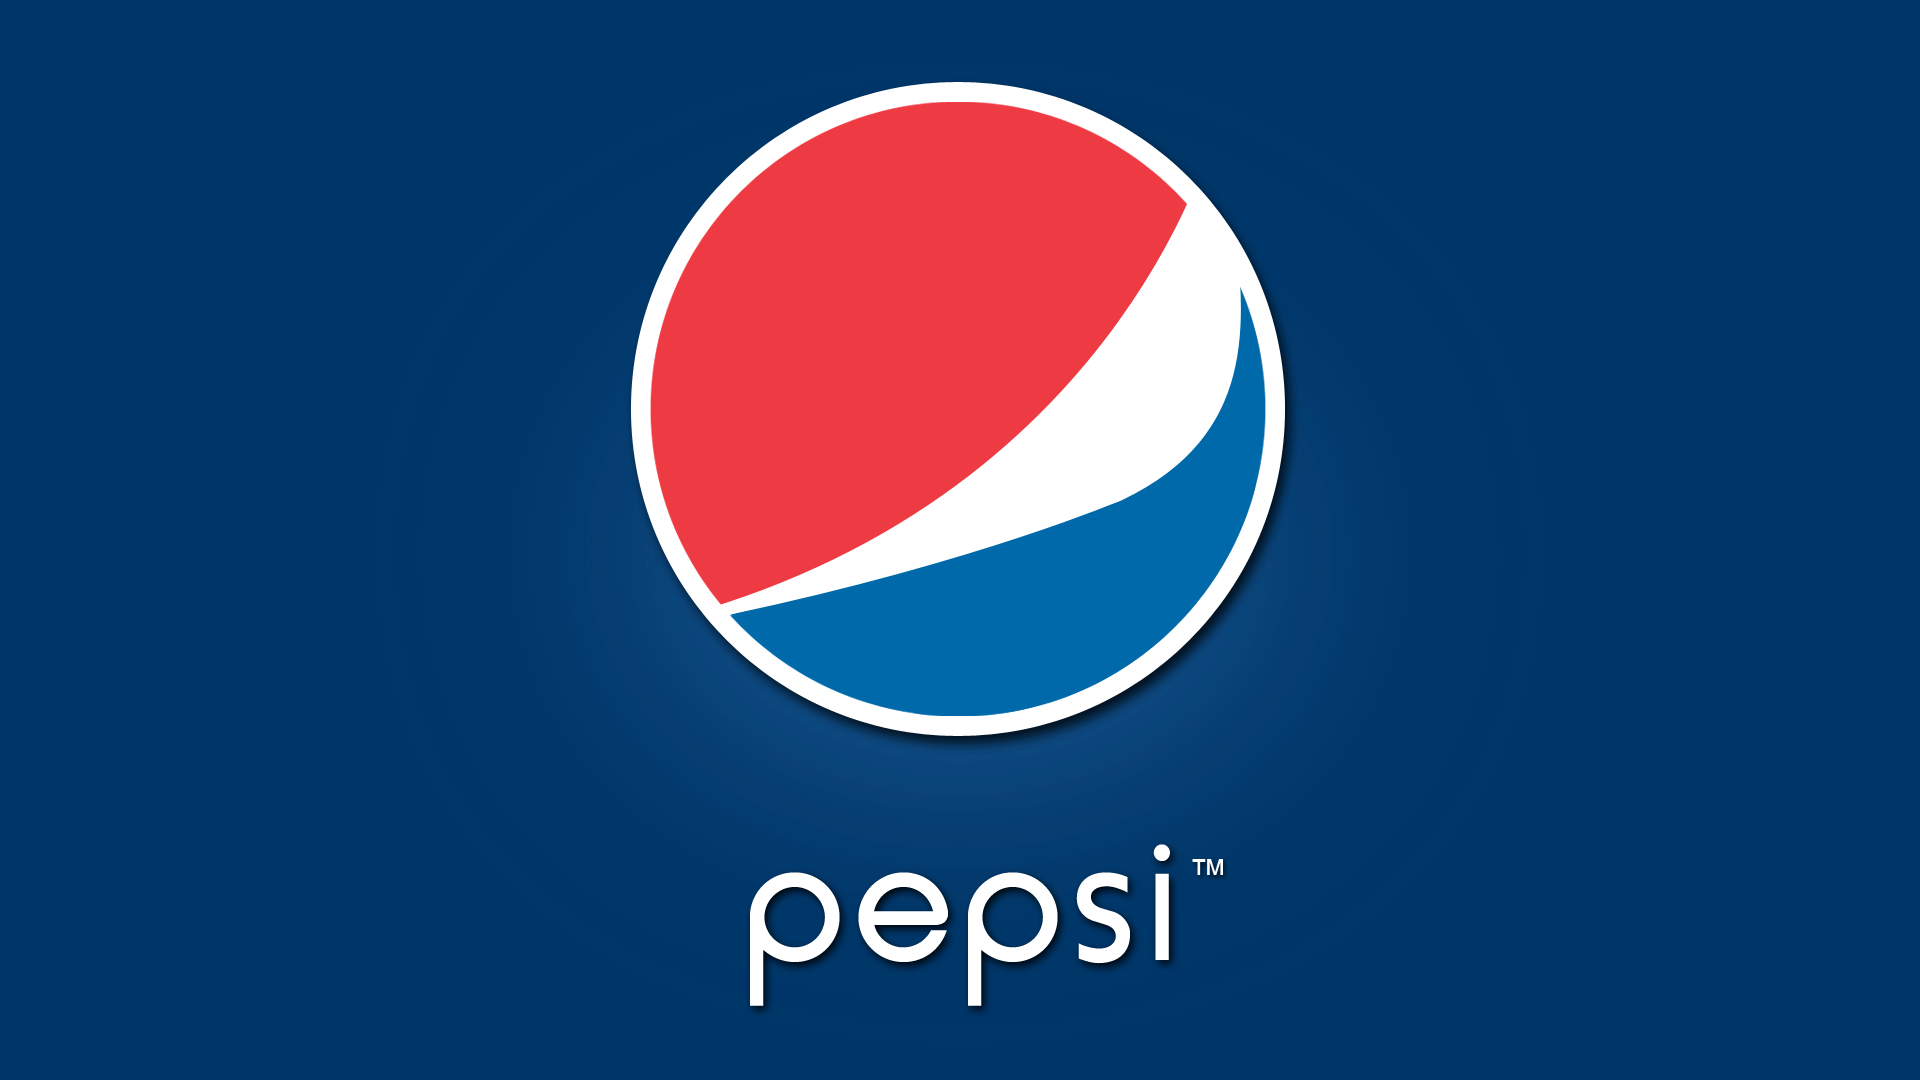 Pepsi Wallpaper Download